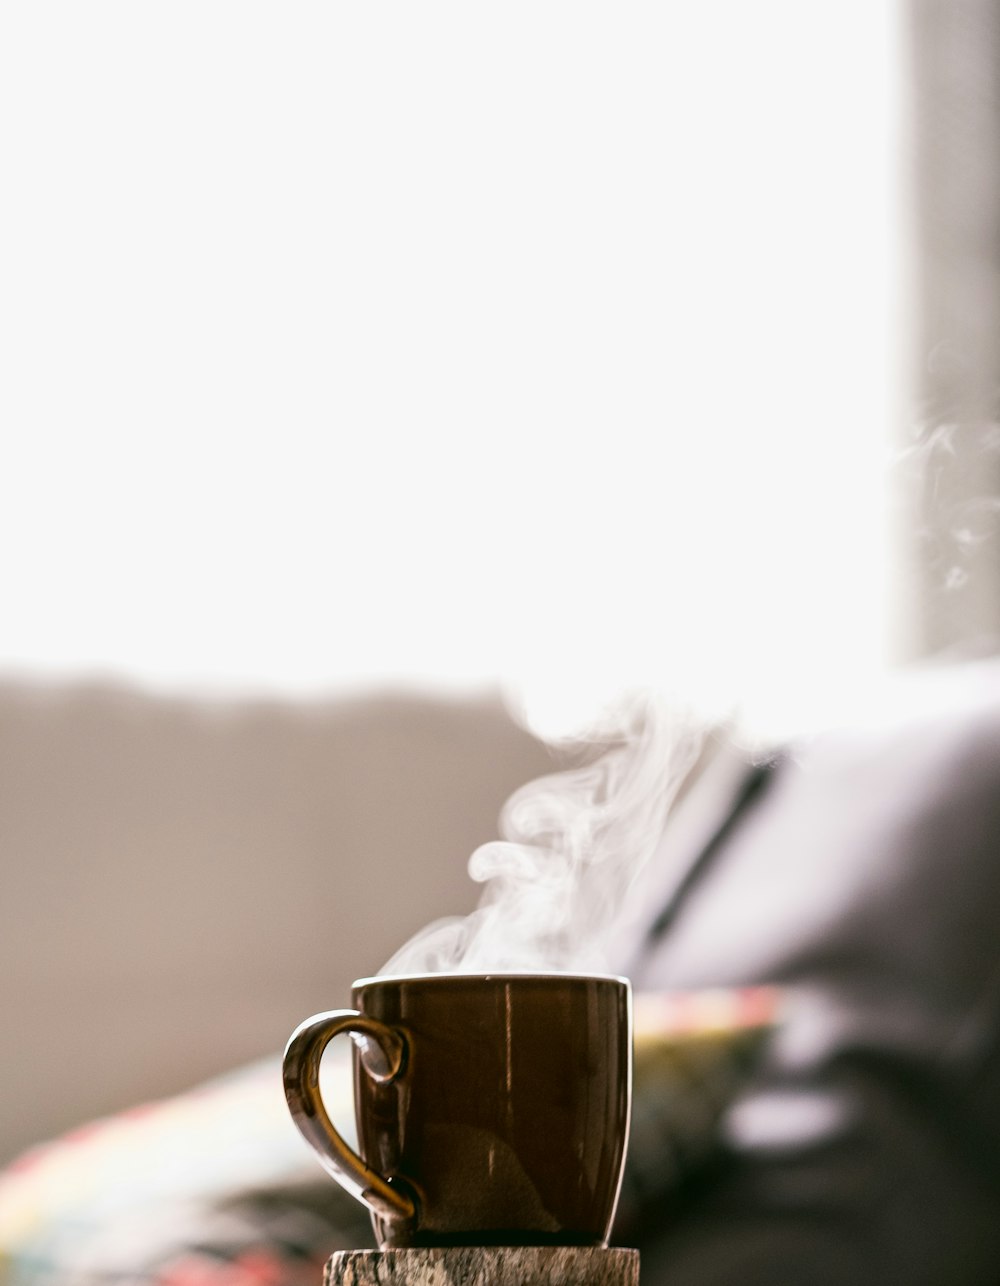 fotografía de enfoque superficial de café caliente en una taza con platillo